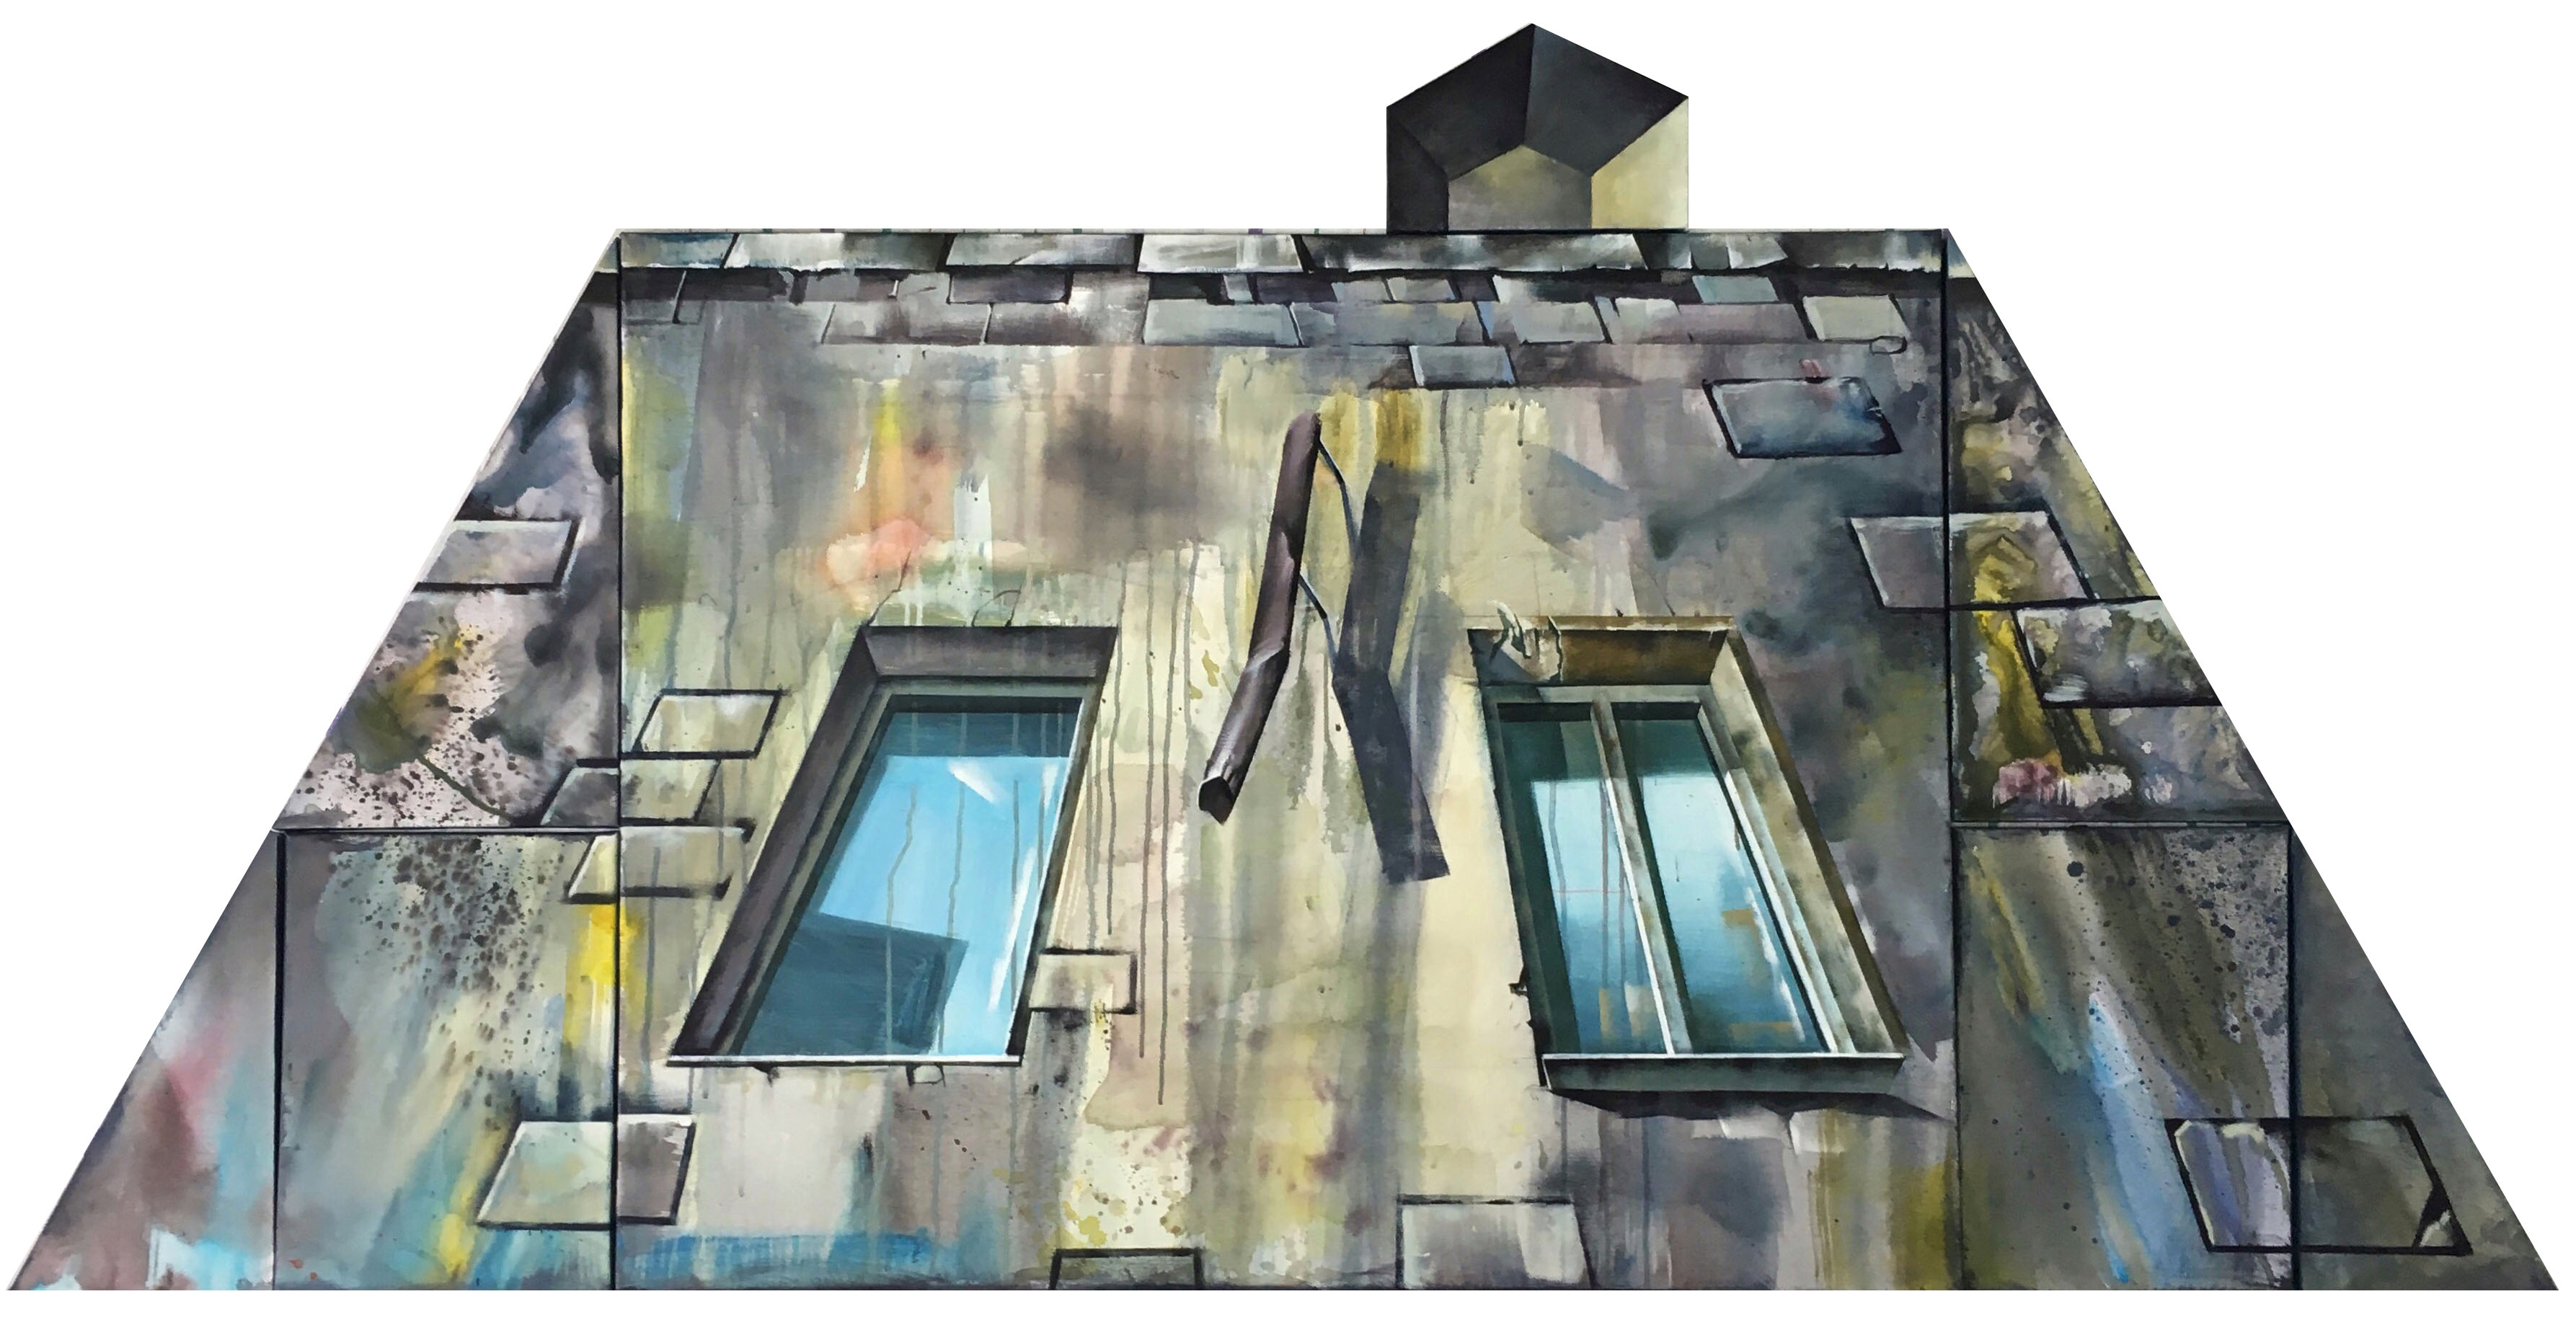 Дом в перспективе - 1, Динара Хёртнагль, Купить картину Акрил